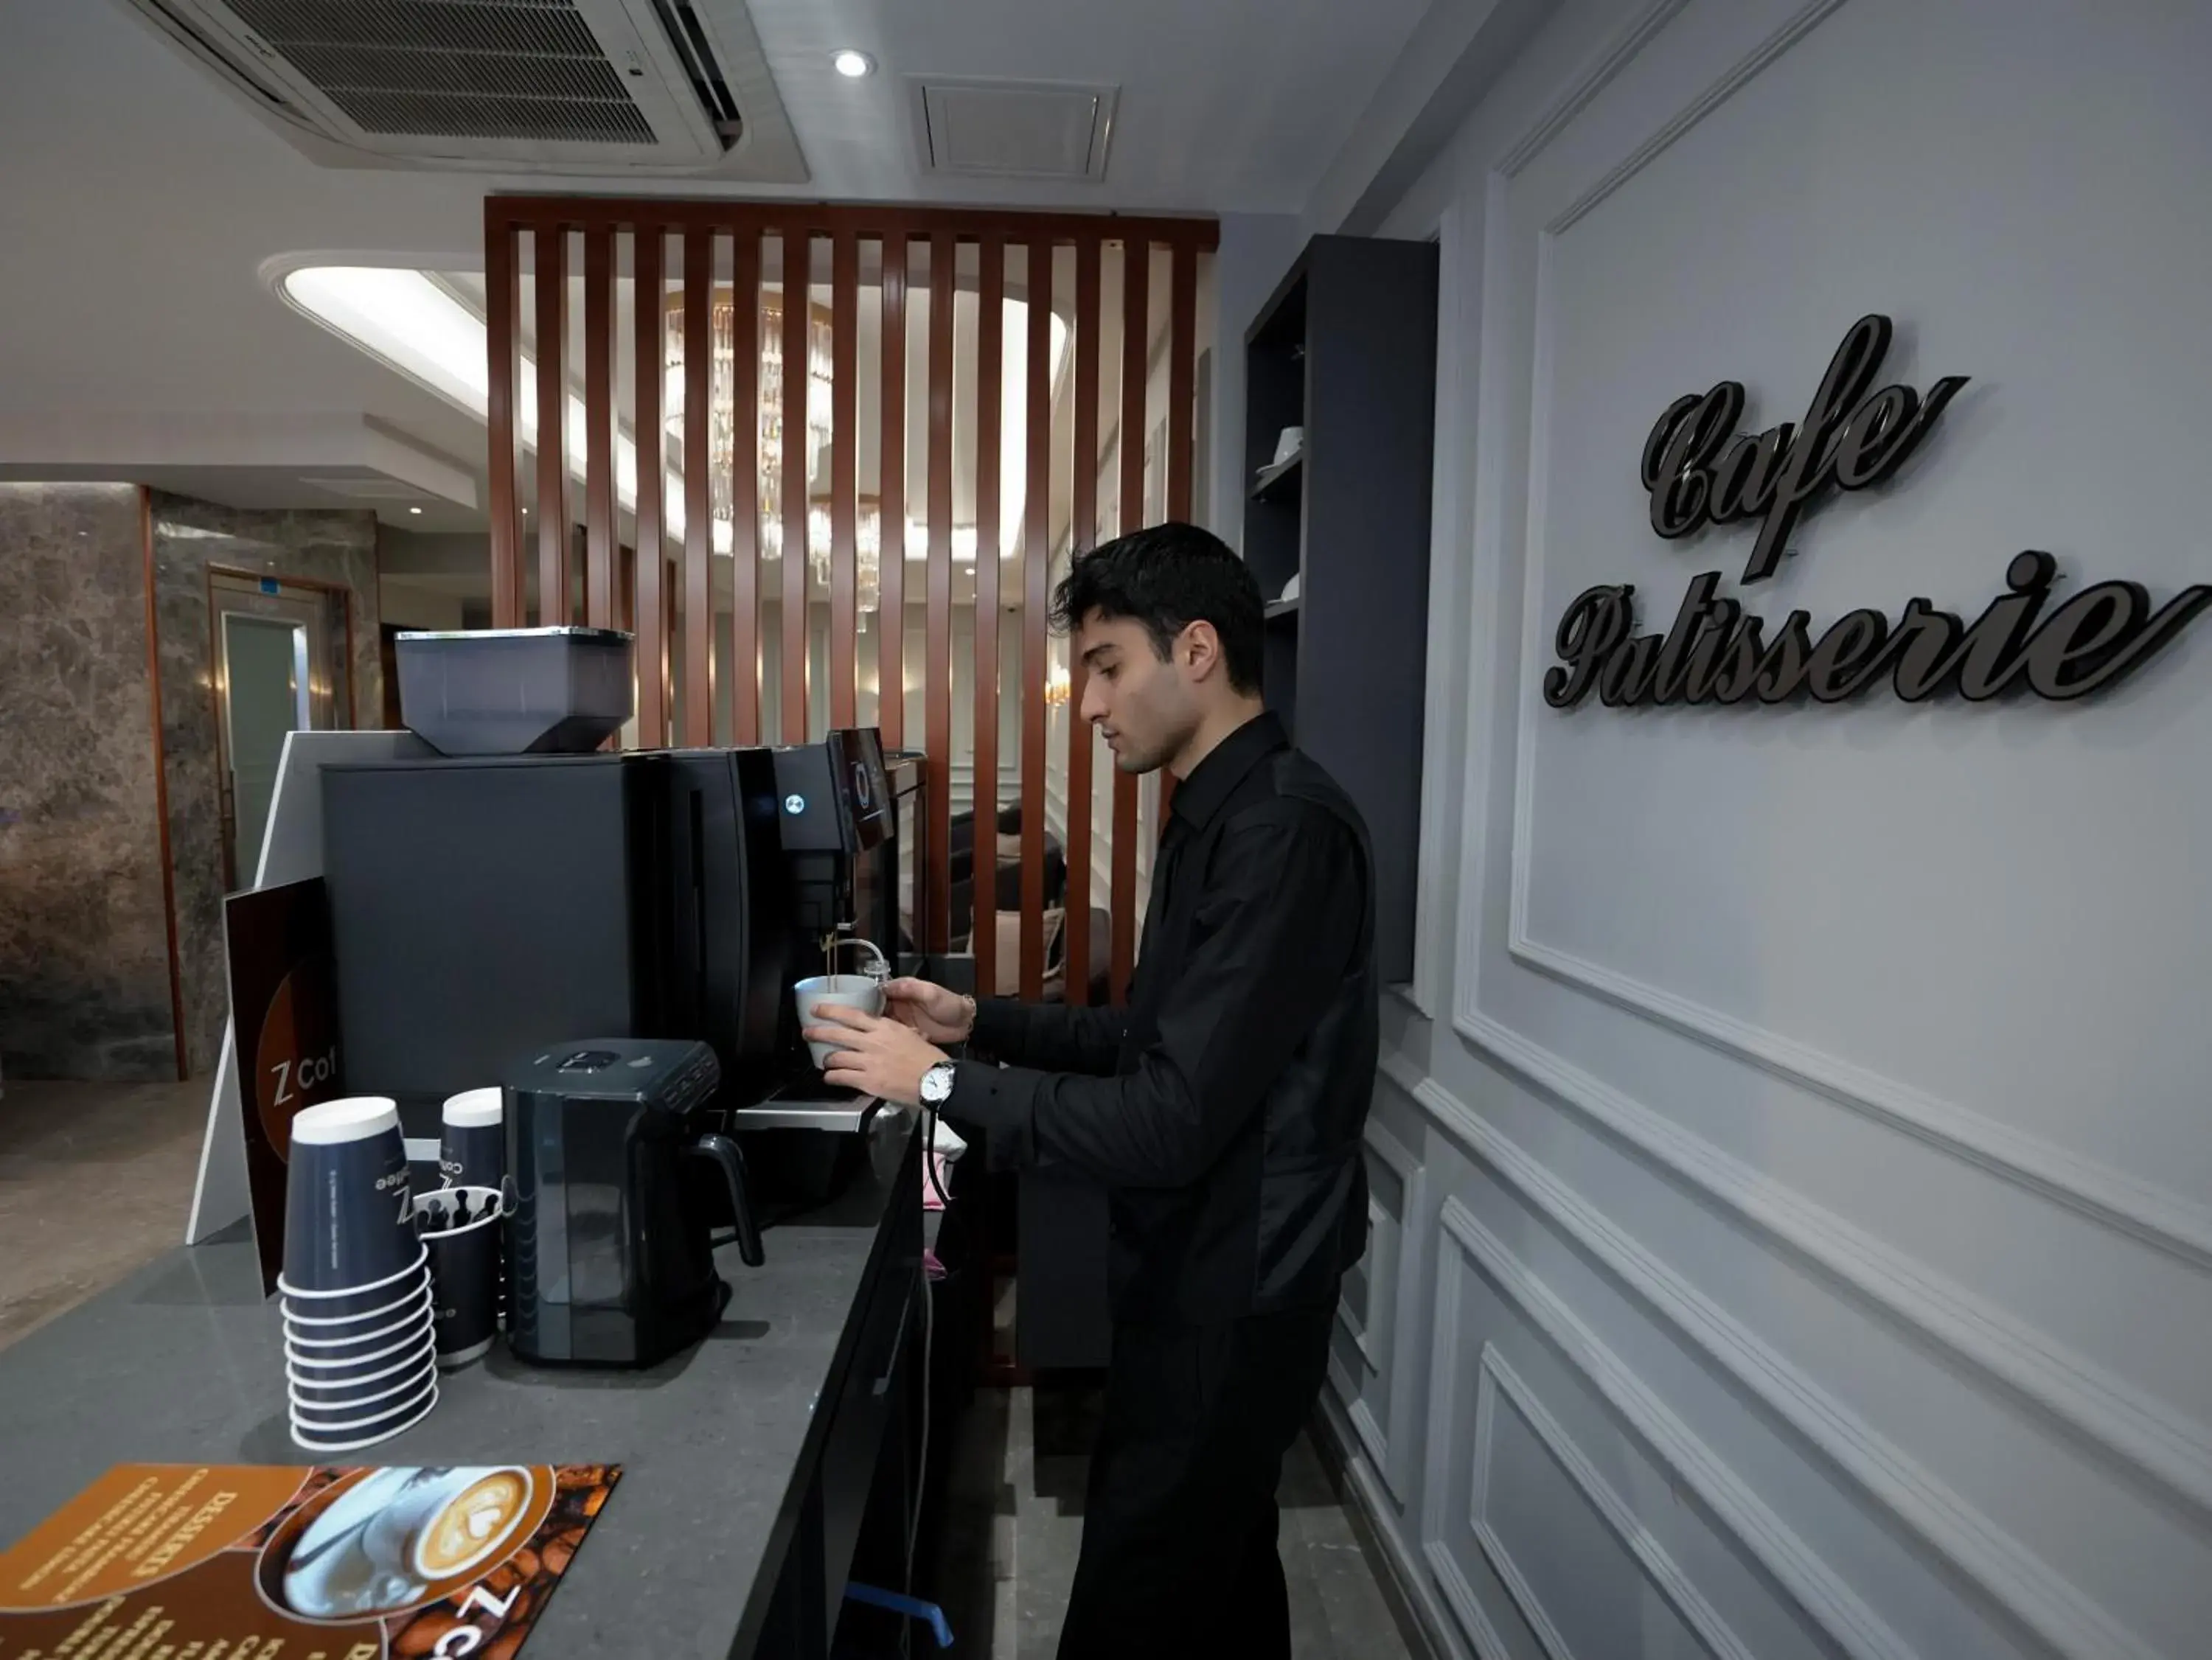 Lobby or reception in zalel hotels laleli